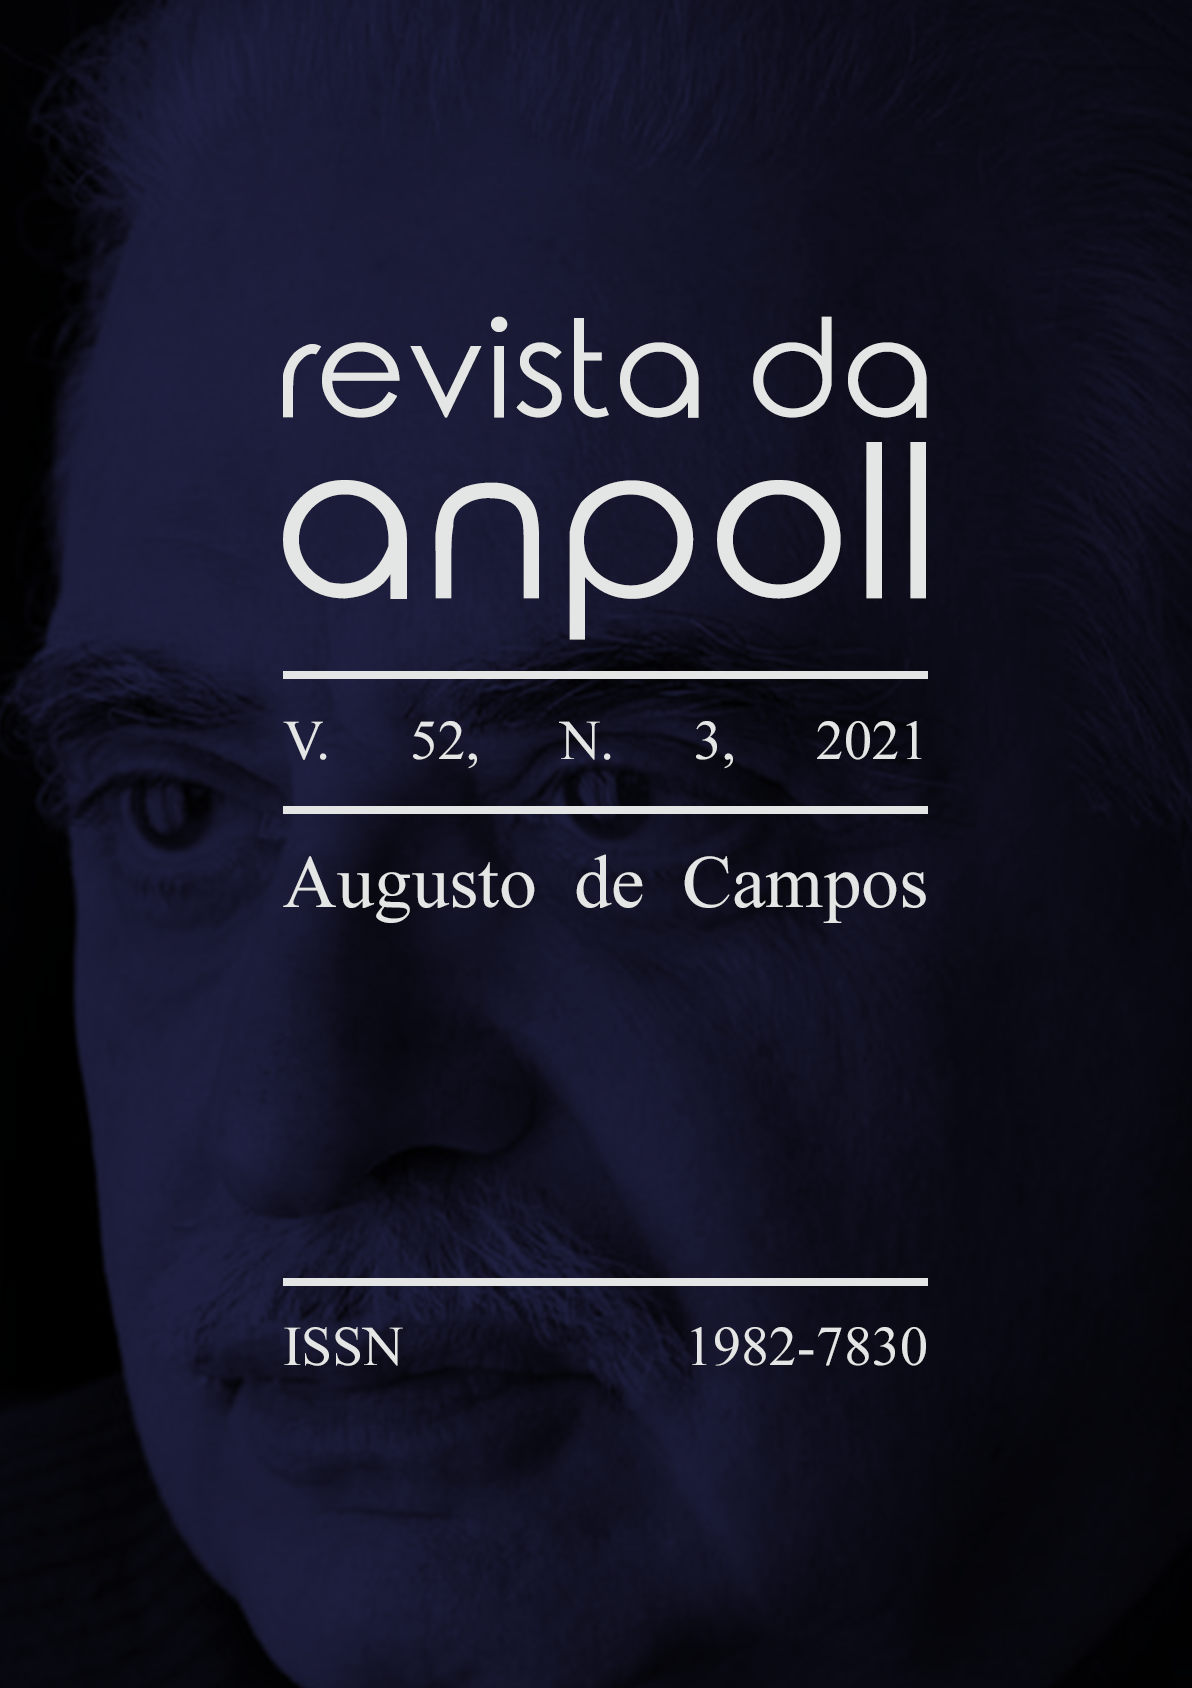 					Visualizar v. 52 n. 3 (2021): Estudos Literários: Augusto de Campos
				